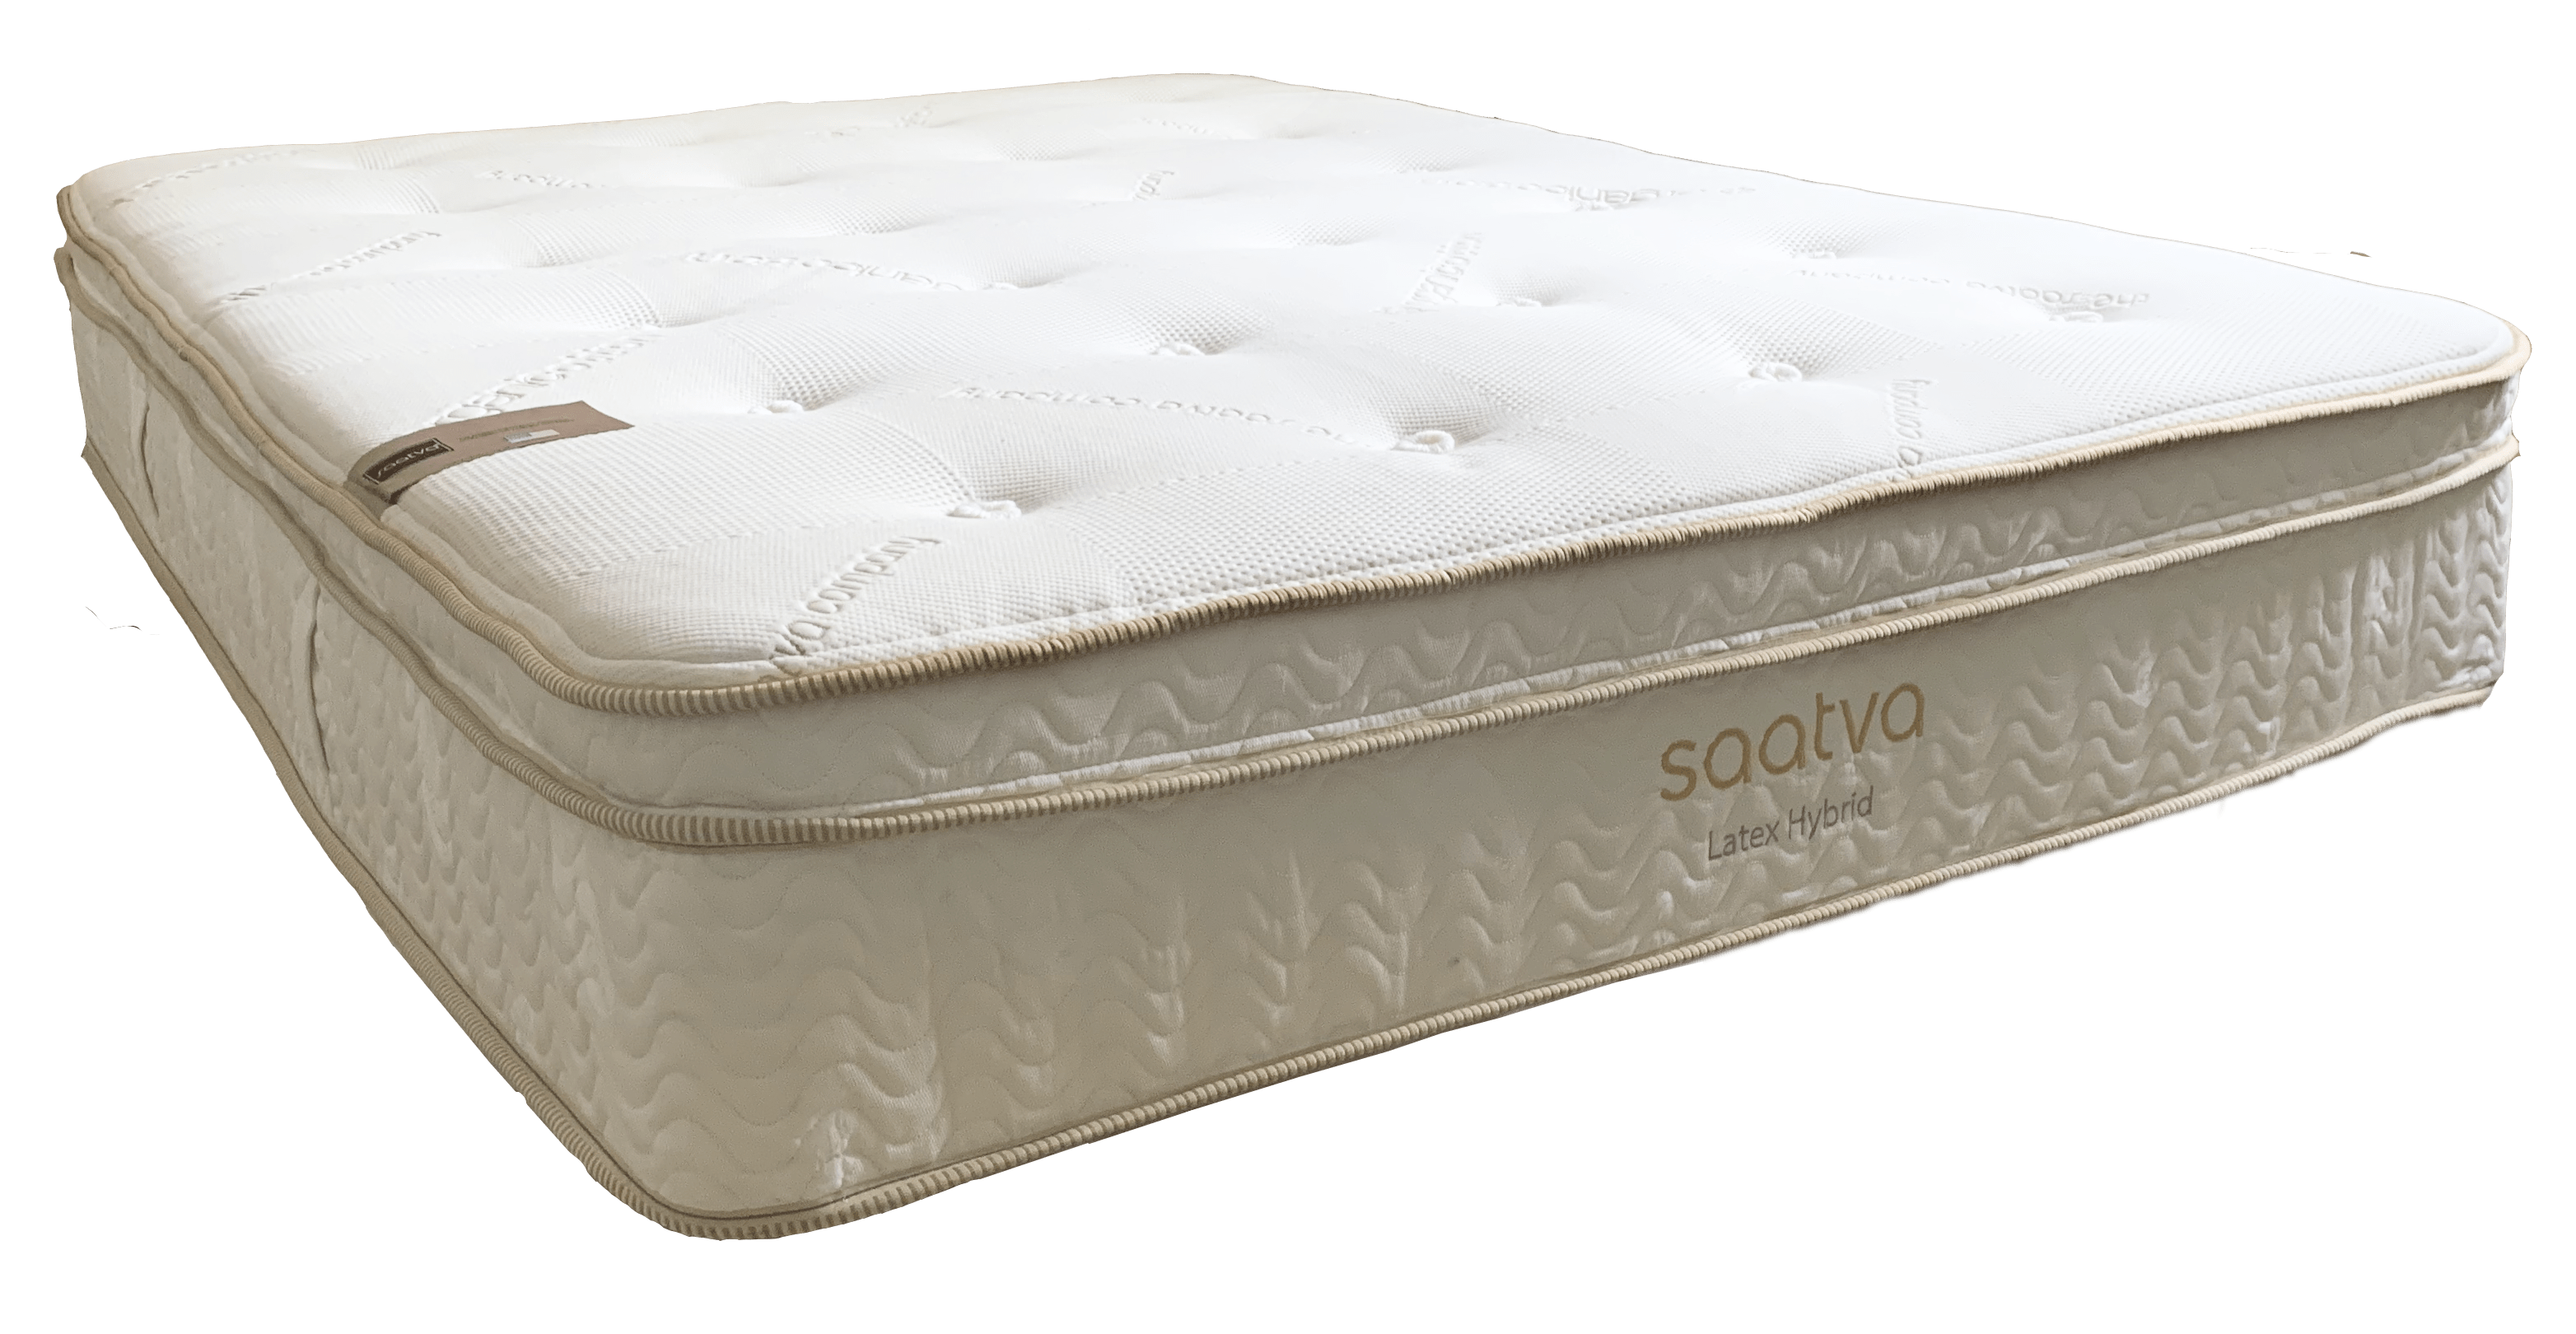 is a saatva mattress latex